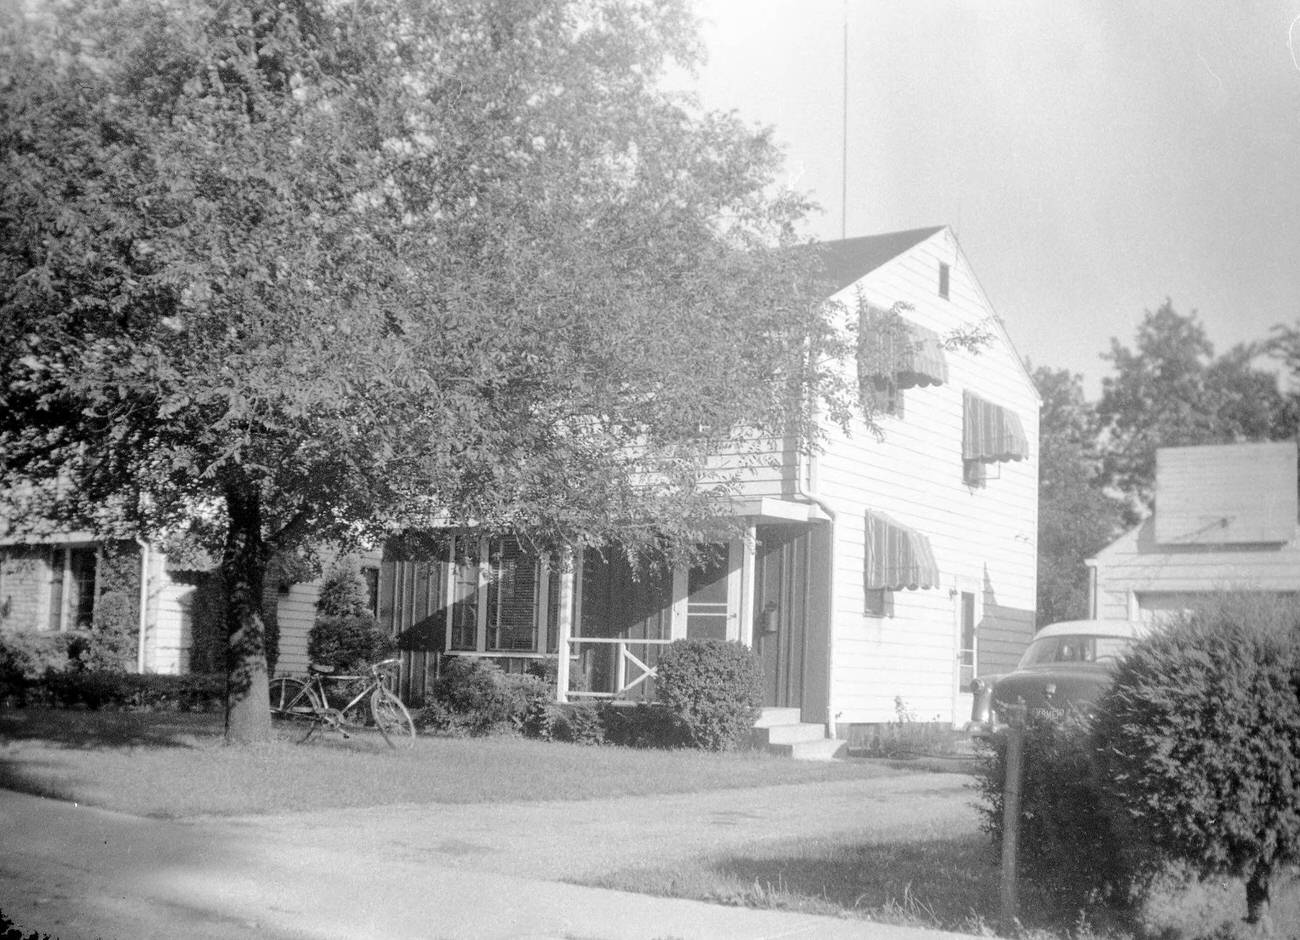 House at 525 Meadoway Park, circa 1955.